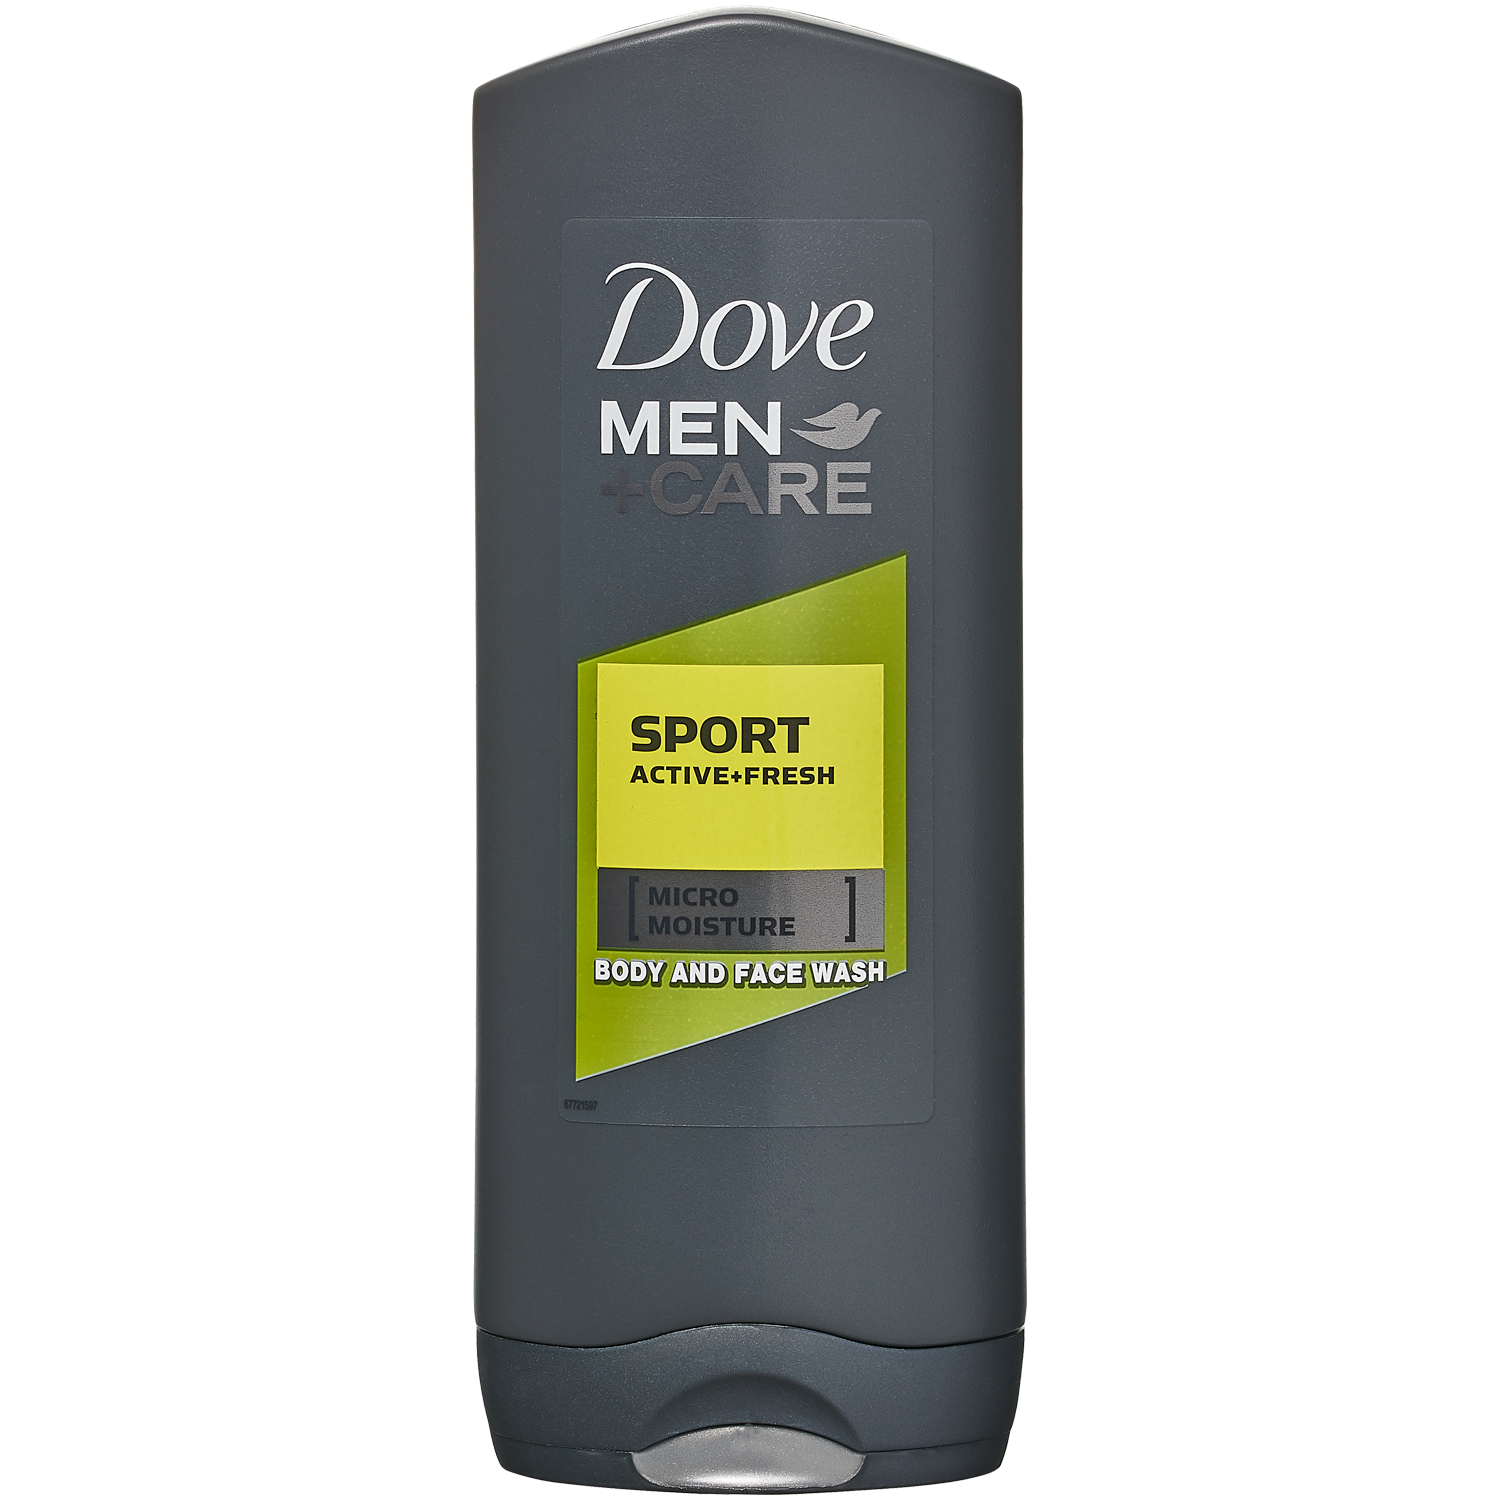 Dove Men Care Sport Active + Fresh освежающий гель для душа для мужчин, 400 мл dove men care fresh clean 2w1 освежающий мужской шампунь и кондиционер 400 мл